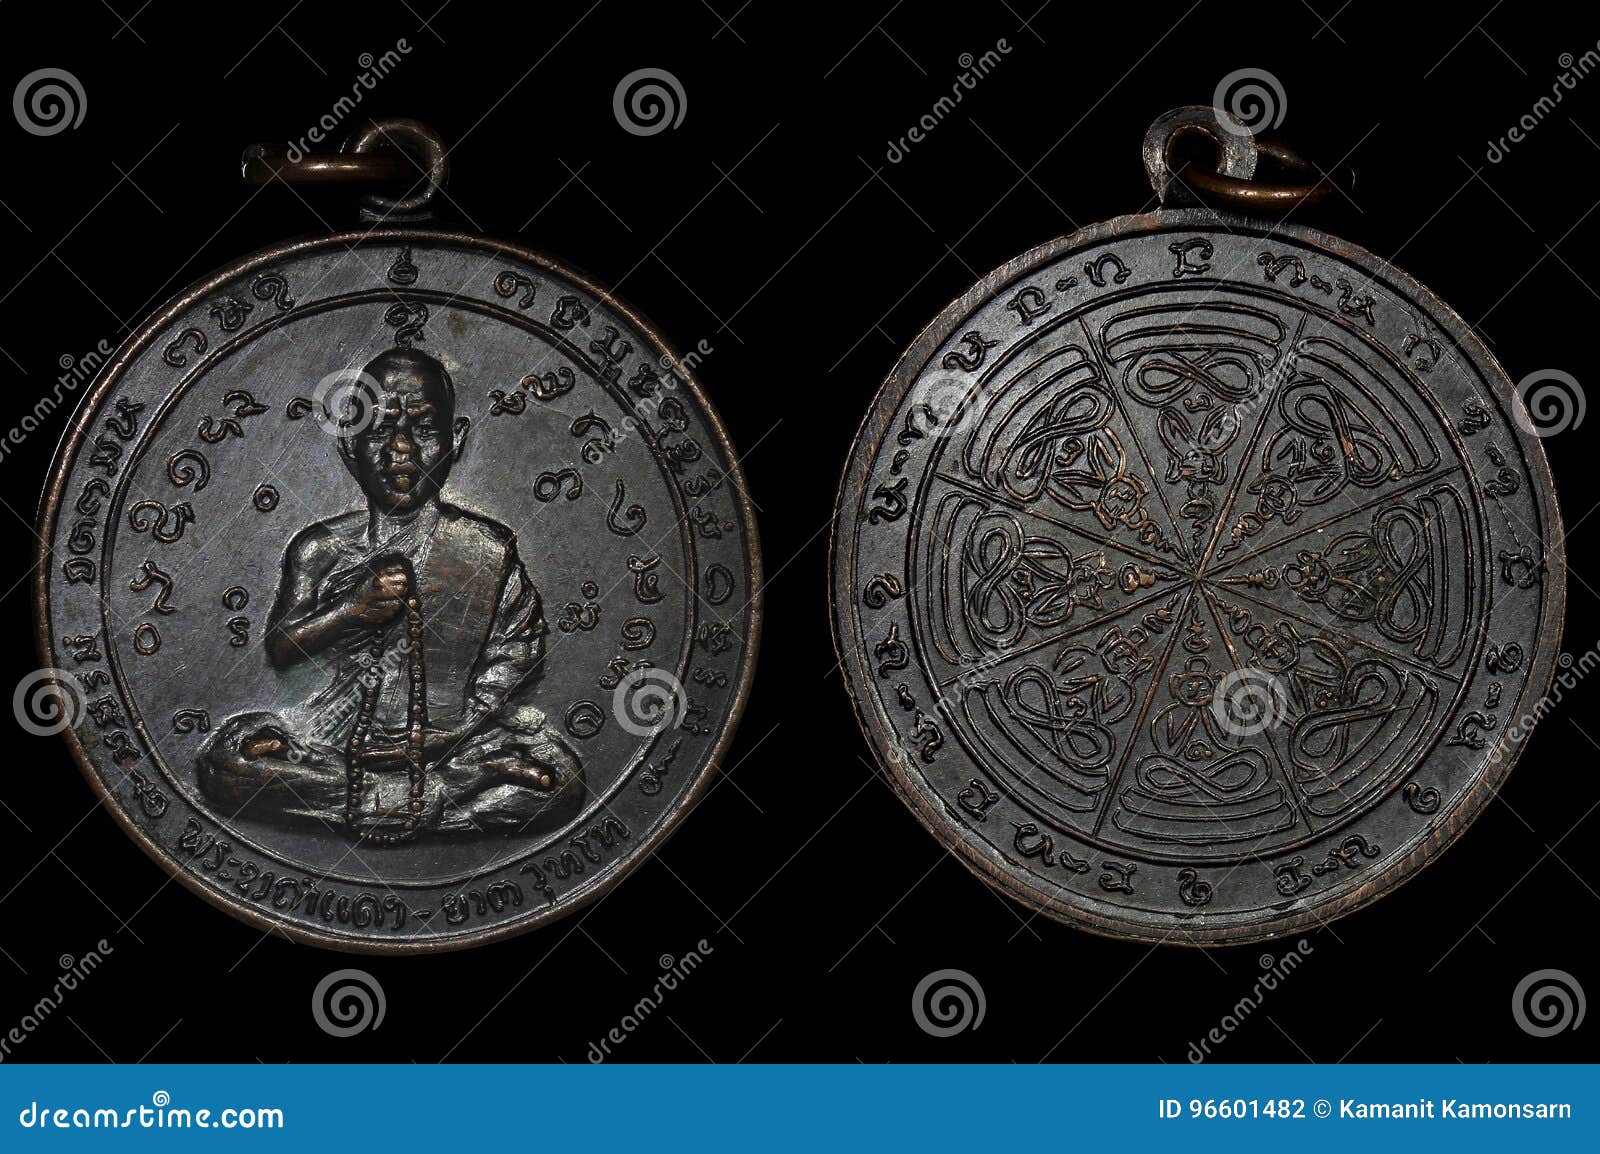 墨西哥、阿根廷、比利时、泰国、老挝硬币 - 铜元和机制币 - 古泉社区